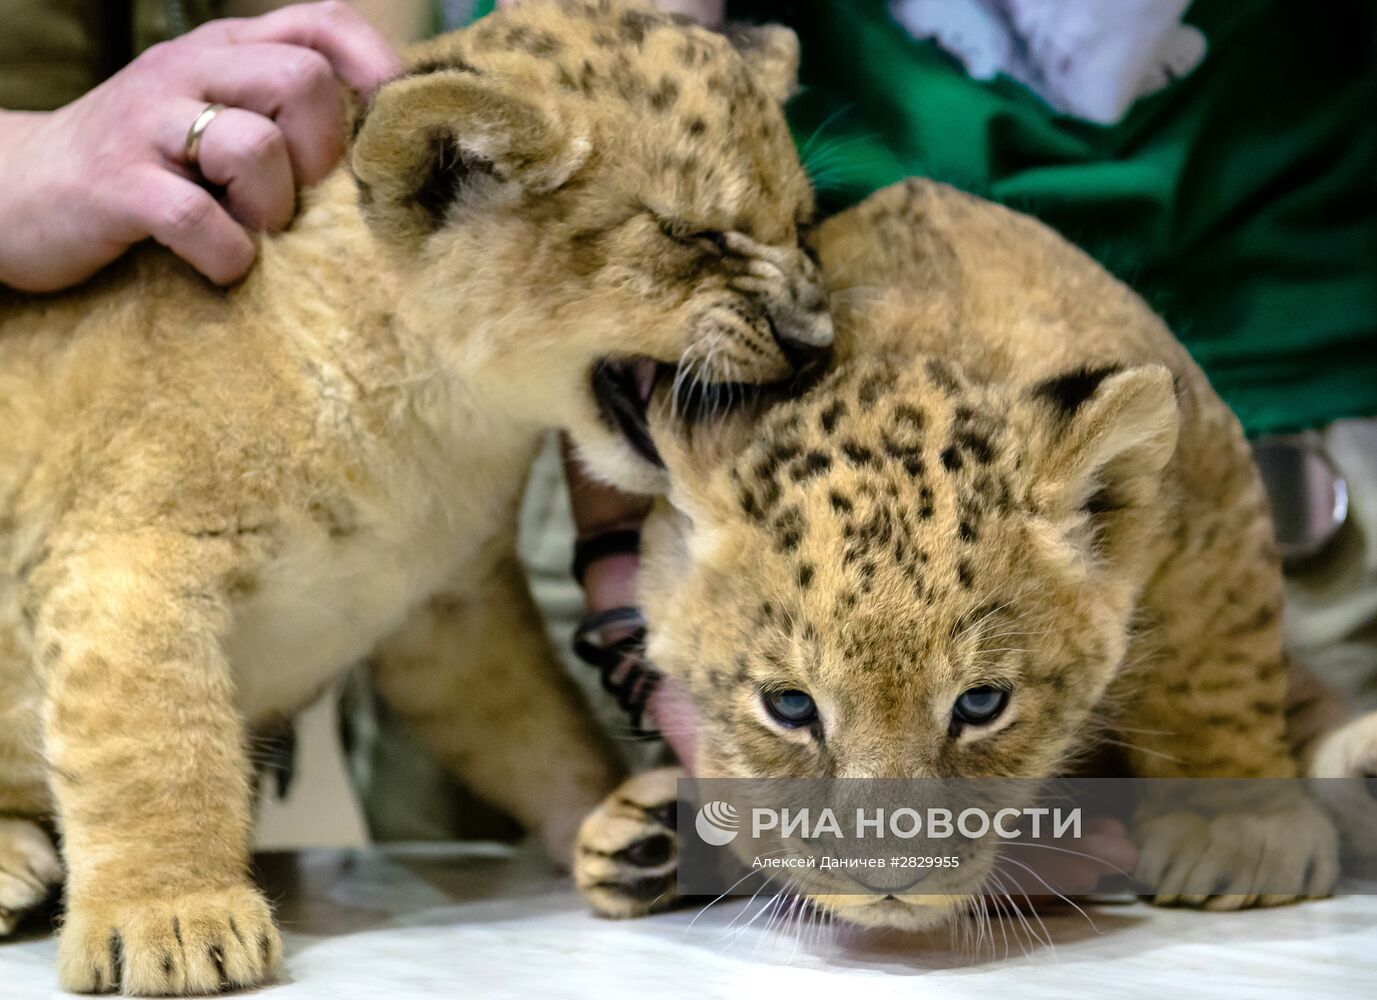 Пополнение в Ленинградском зоопарке